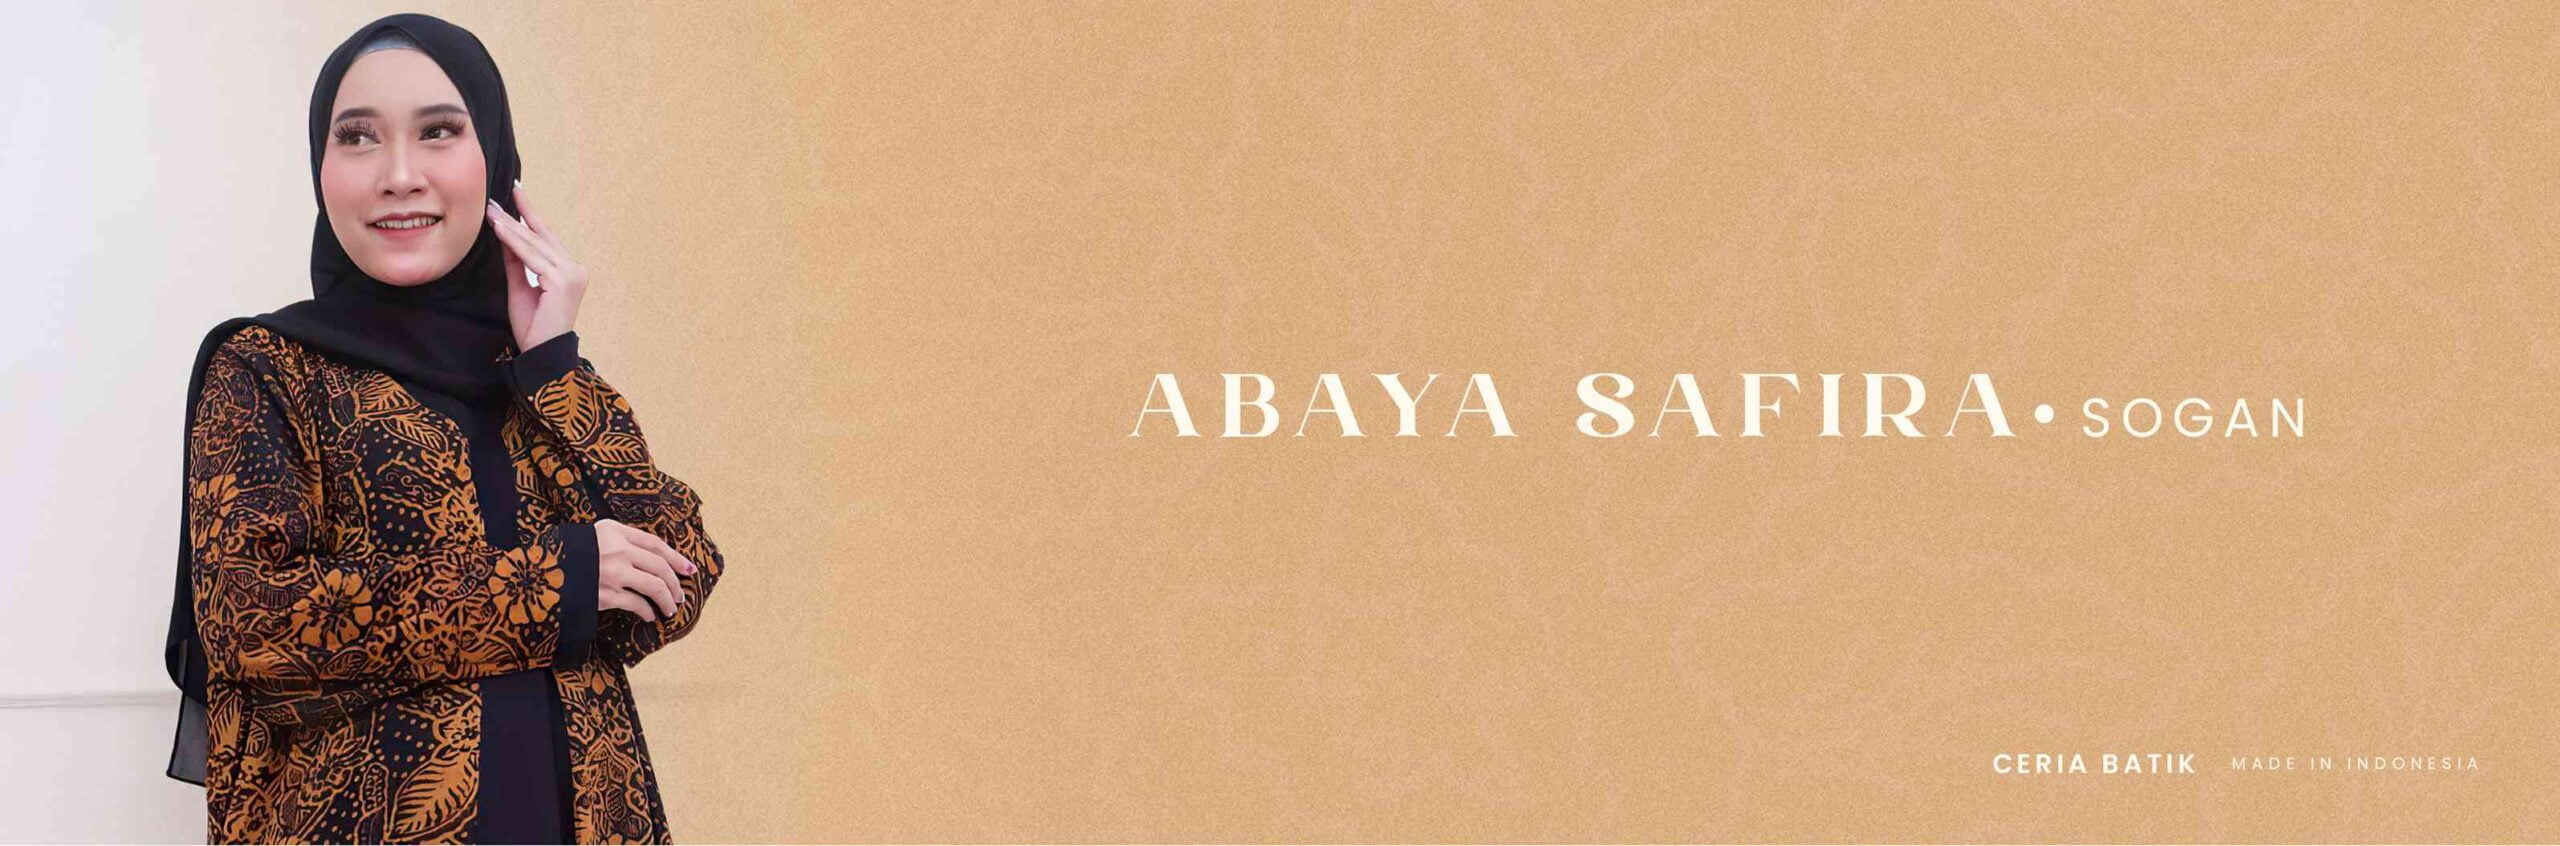 HEADER ABAYA SAFIRA-SOGAN